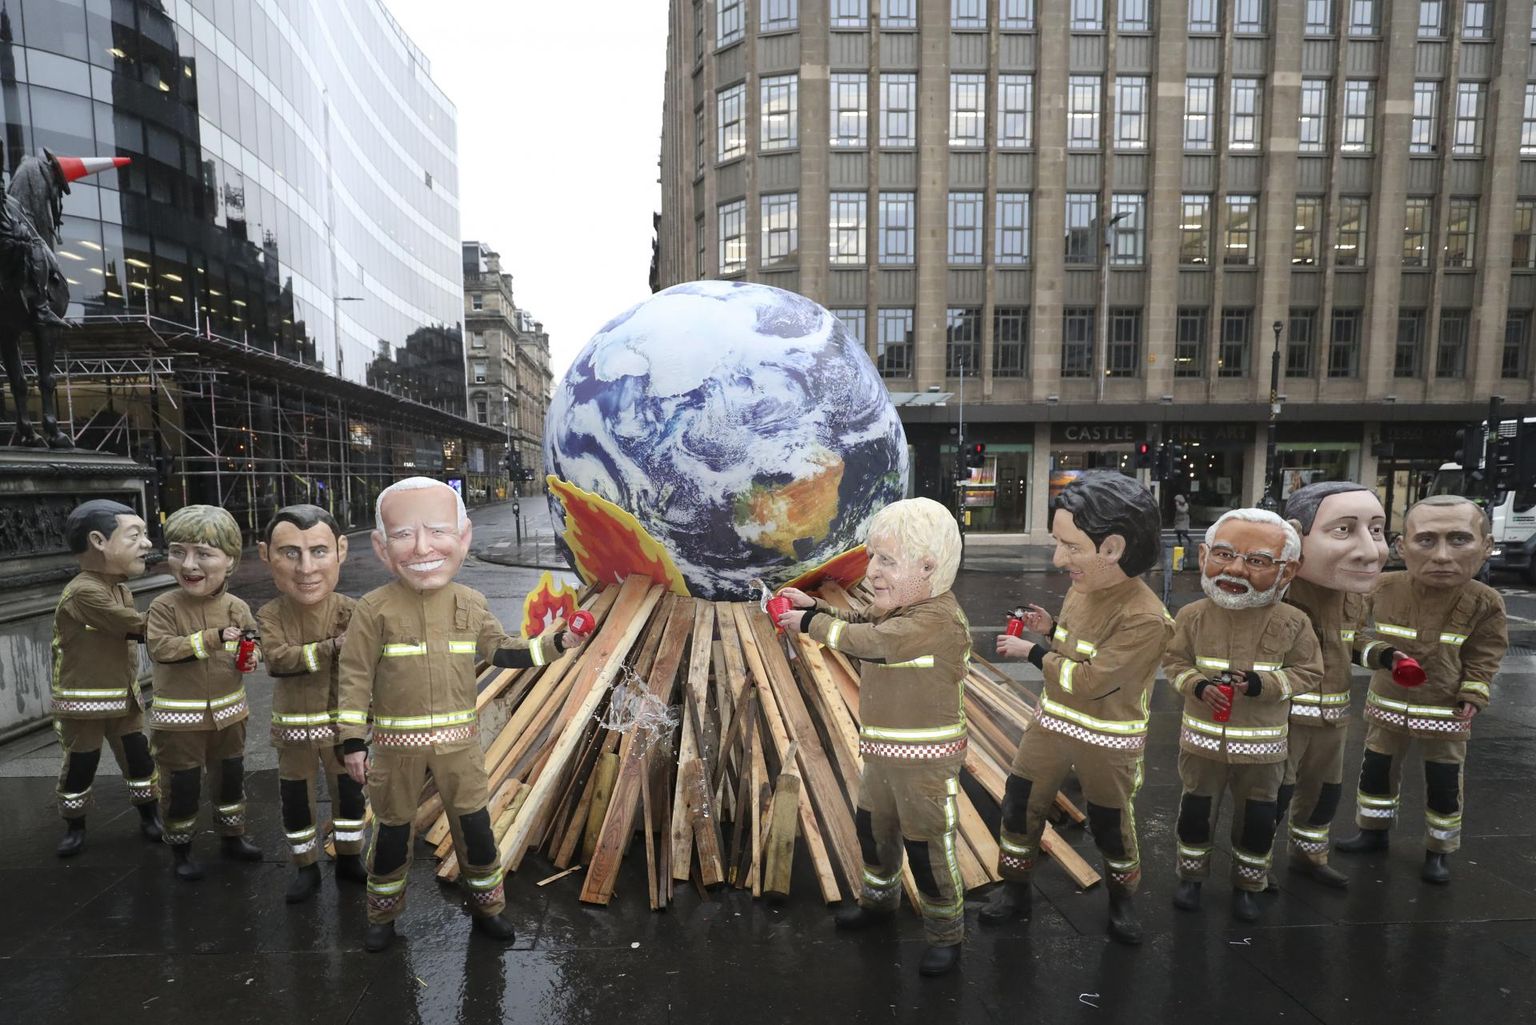 Glasgow’s toimus kliimakonverentsi ajal rohkesti kliimaaktivistide meeleavaldusi.